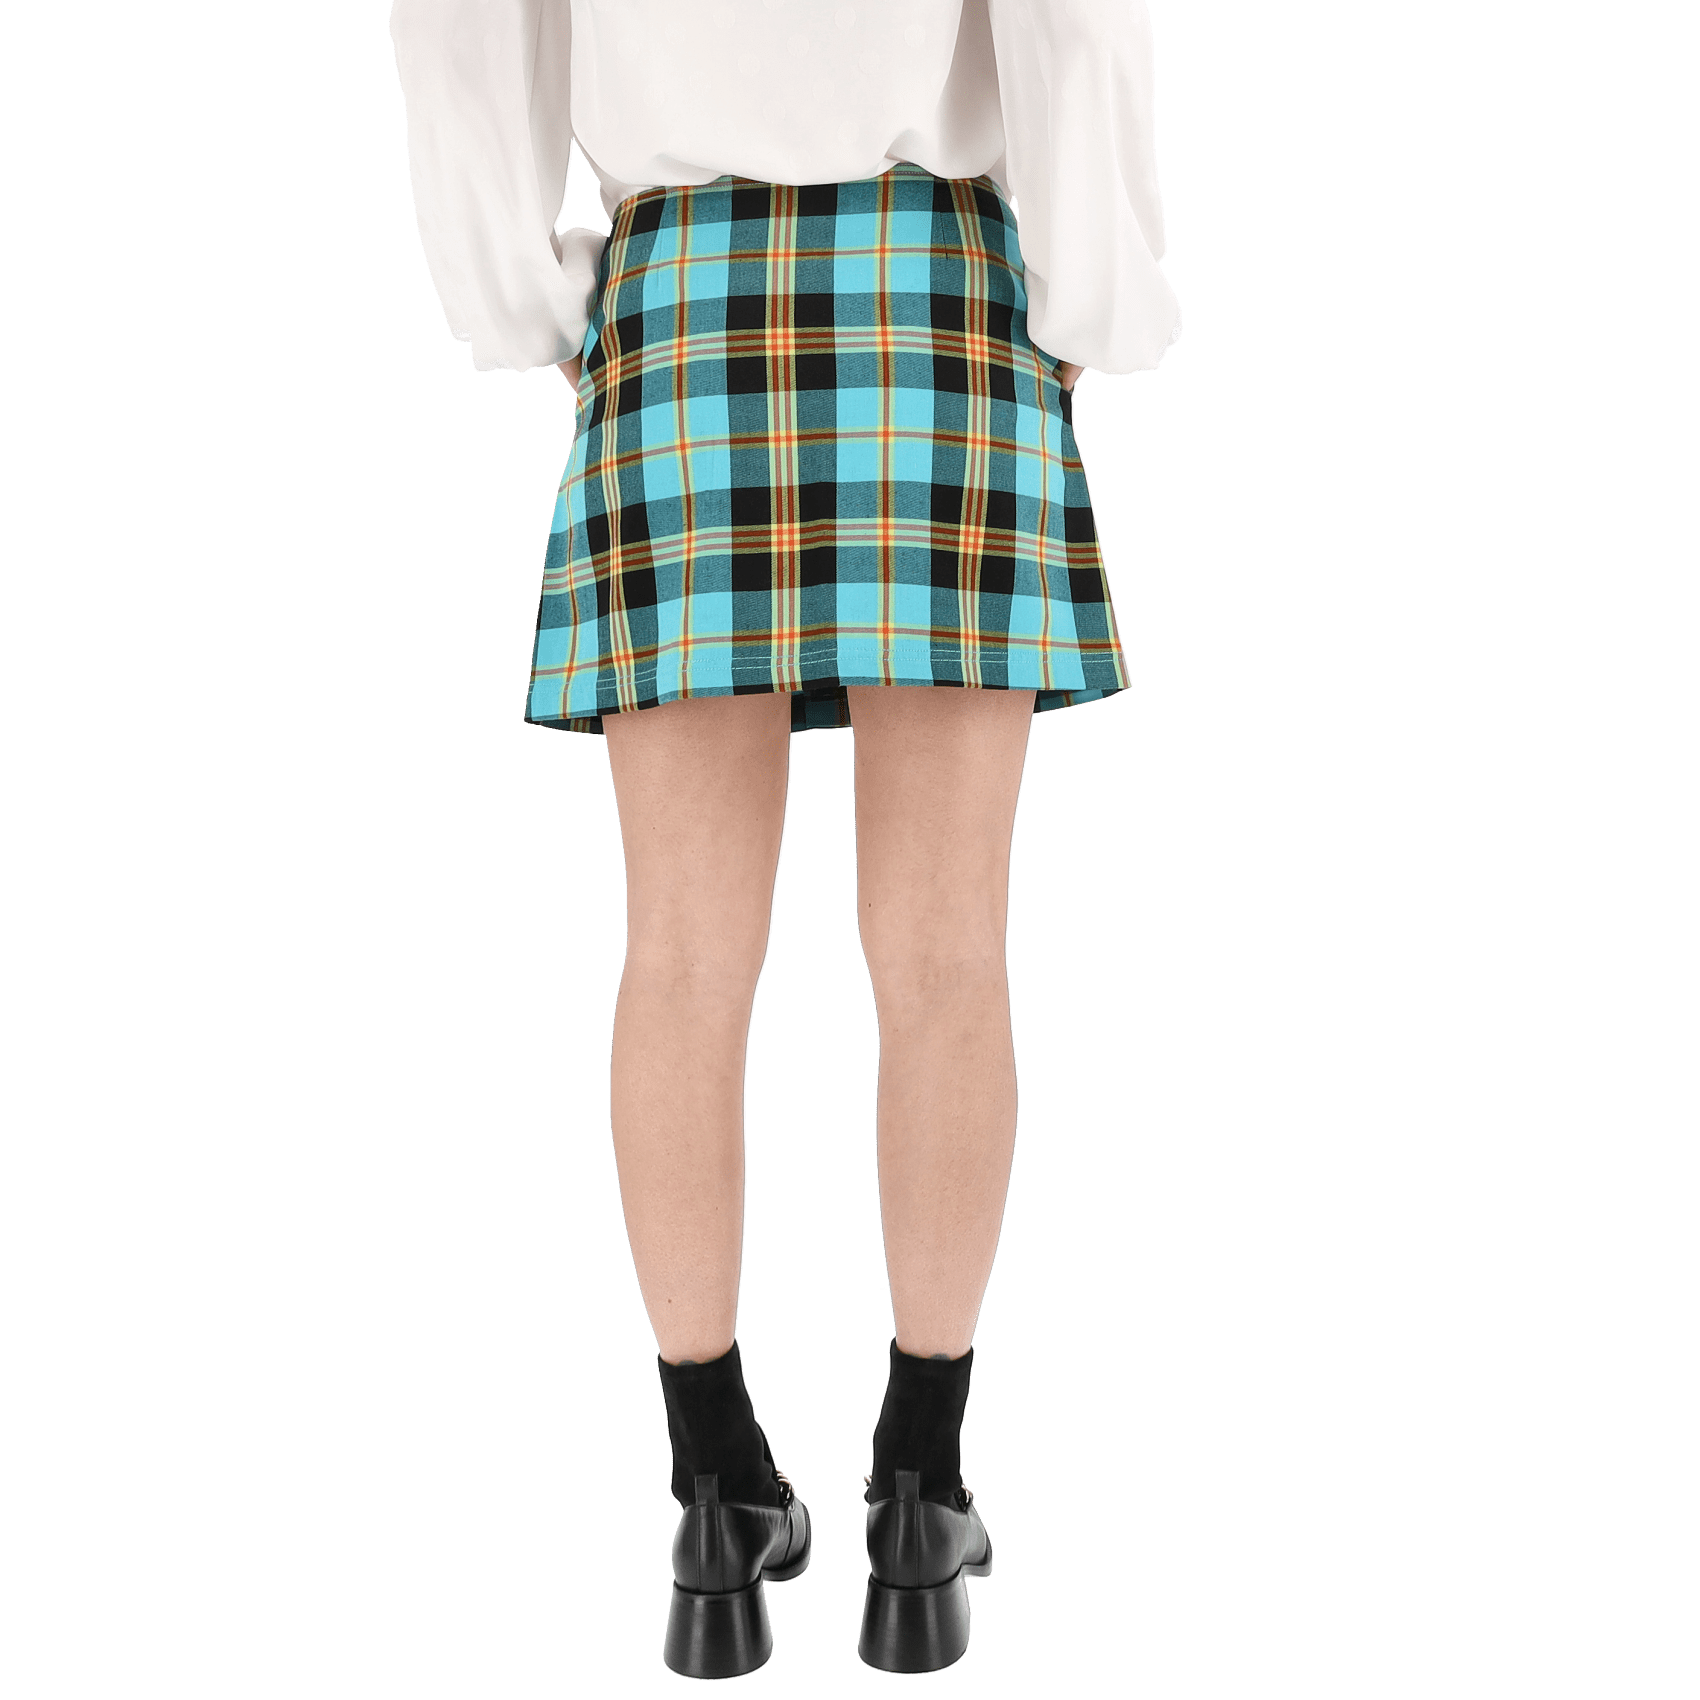 Joanie Plaid Skirt - Aqua Multi.